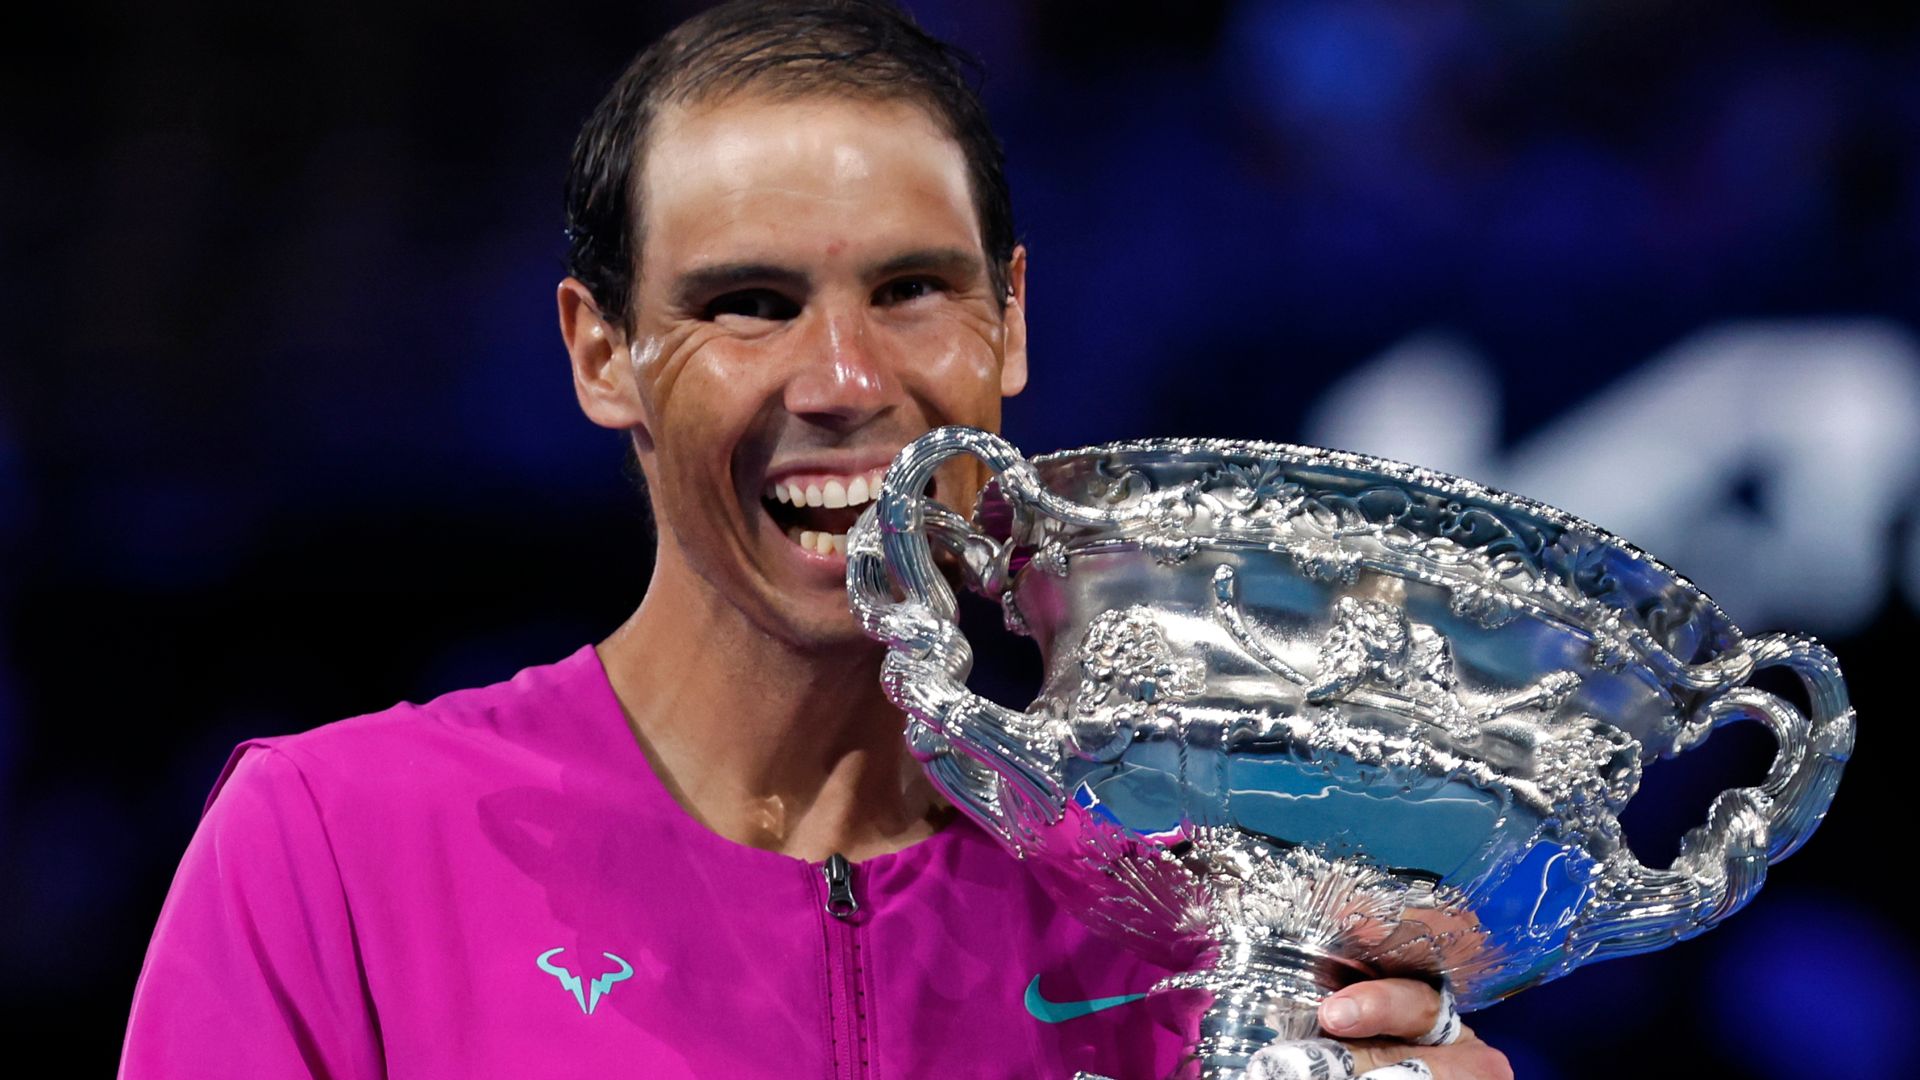 Australian Open: Undian tunggal putra saat Novak Djokovic kembali ke Melbourne;  Andy Murray dan Cameron Norrie memimpin harapan Inggris |  Berita Tenis